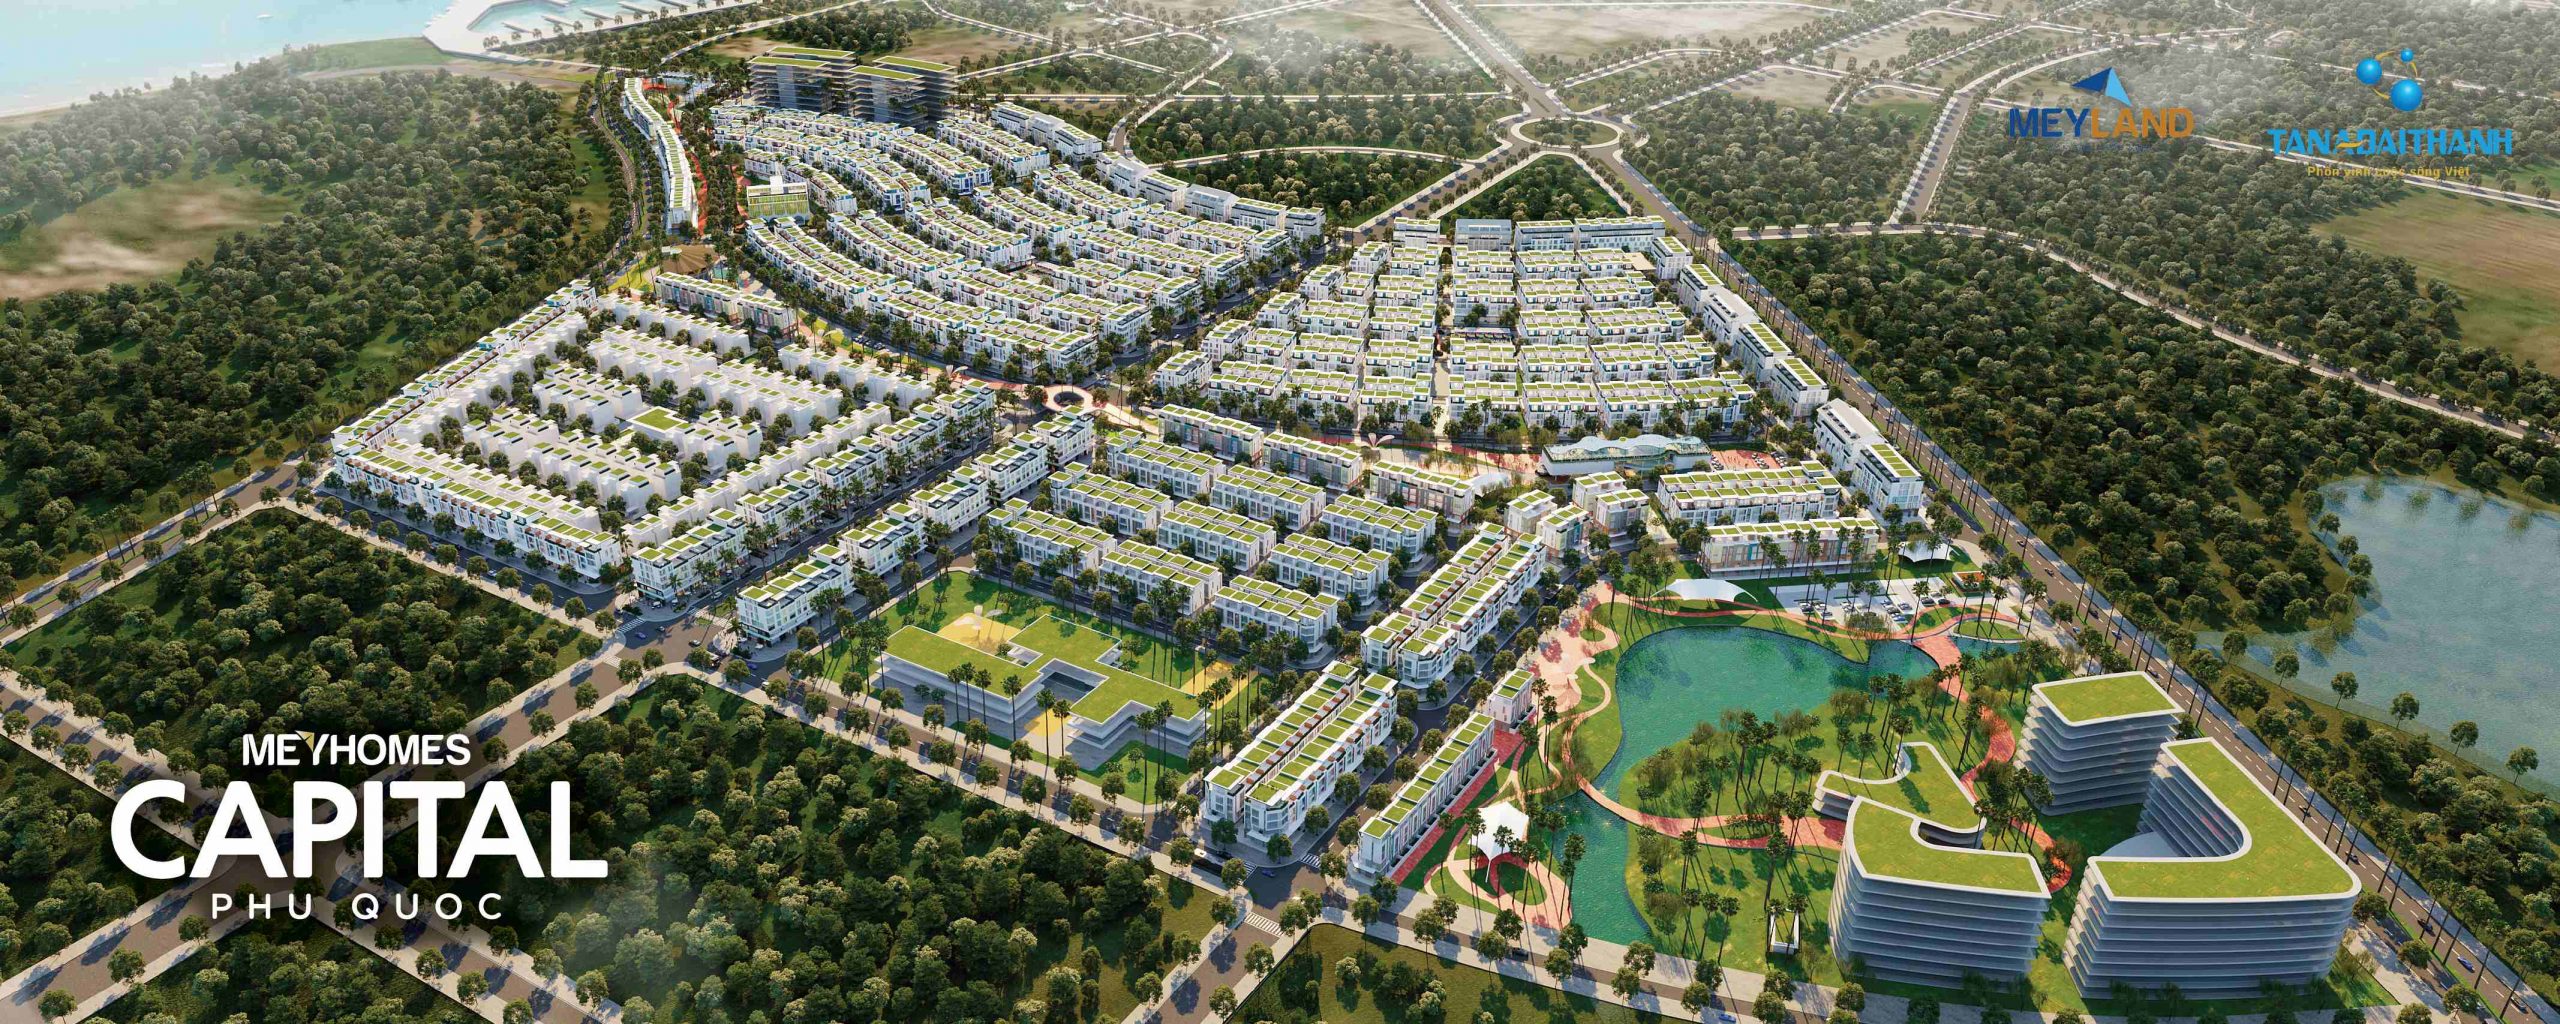  Khu đô thị Việt Nam - Hàn Quốc Meyhomes Capital Phú Quốc là dự án bất động sản đầu tay của Công ty Cổ phần Bất động sản Tập đoàn Tân Á Đại Thành (Meyland)